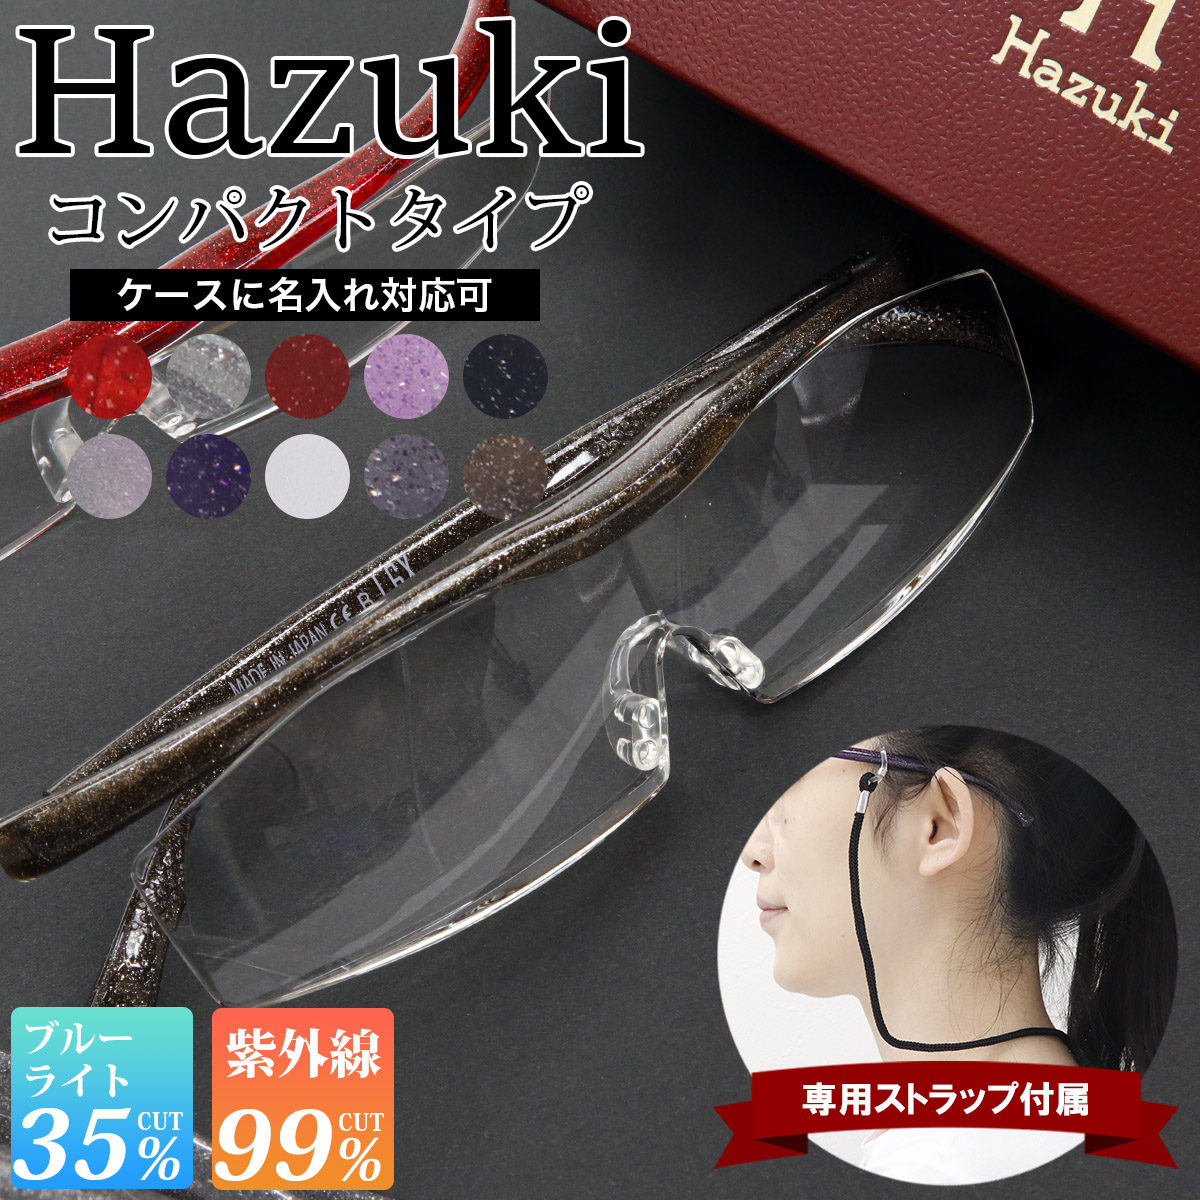 Hazuki ハズキルーペ コンパクト 拡大率 1.85倍 1.6倍 1.32倍 選べる10色 長時間使用しても疲れにくい メガネ型 拡大鏡 踏んでも壊れない 様々なシーンで使える